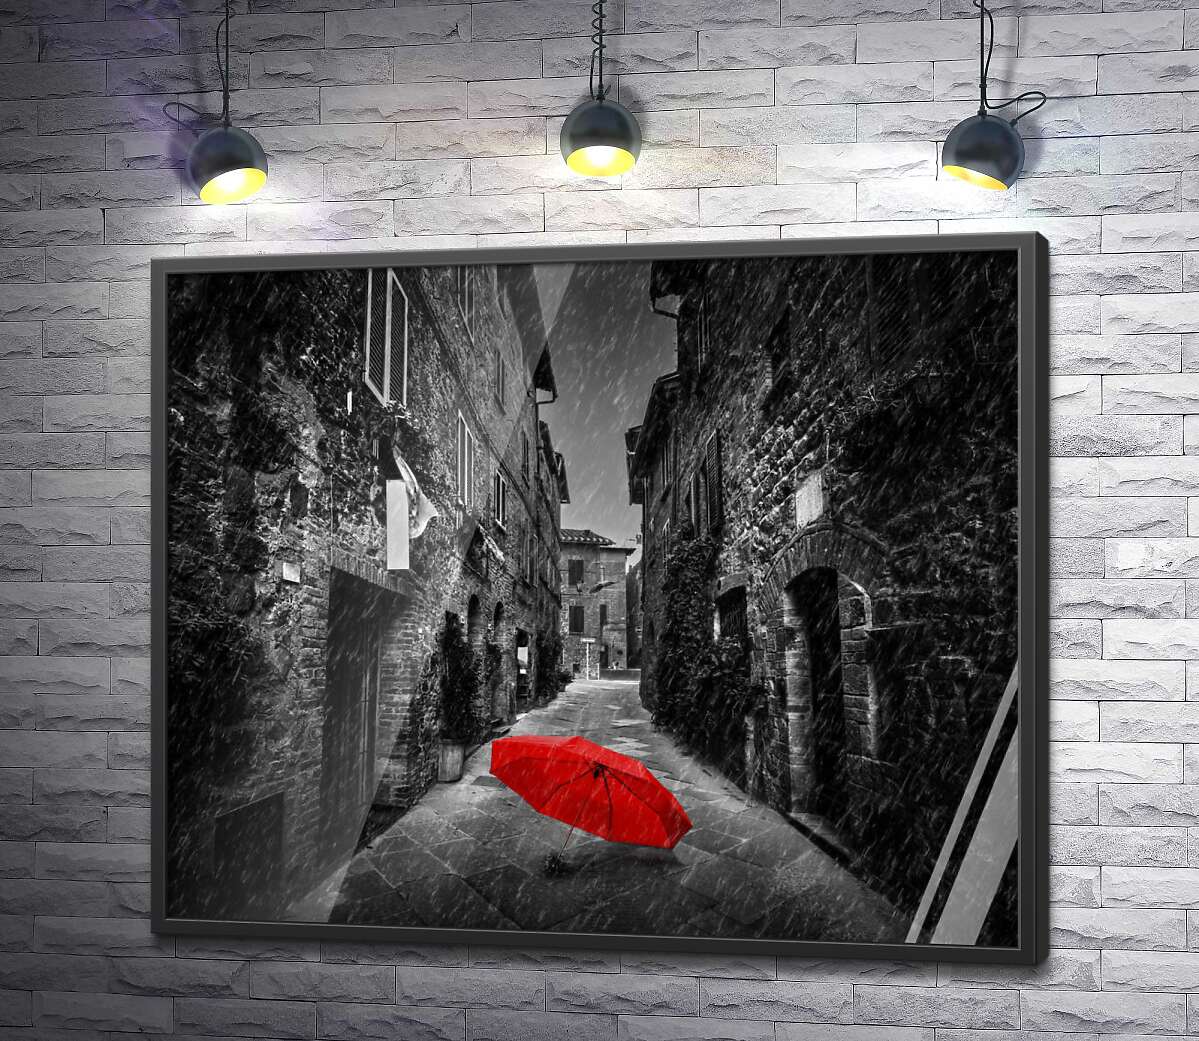 постер Красный зонтик лежит на дождливой улице старого города